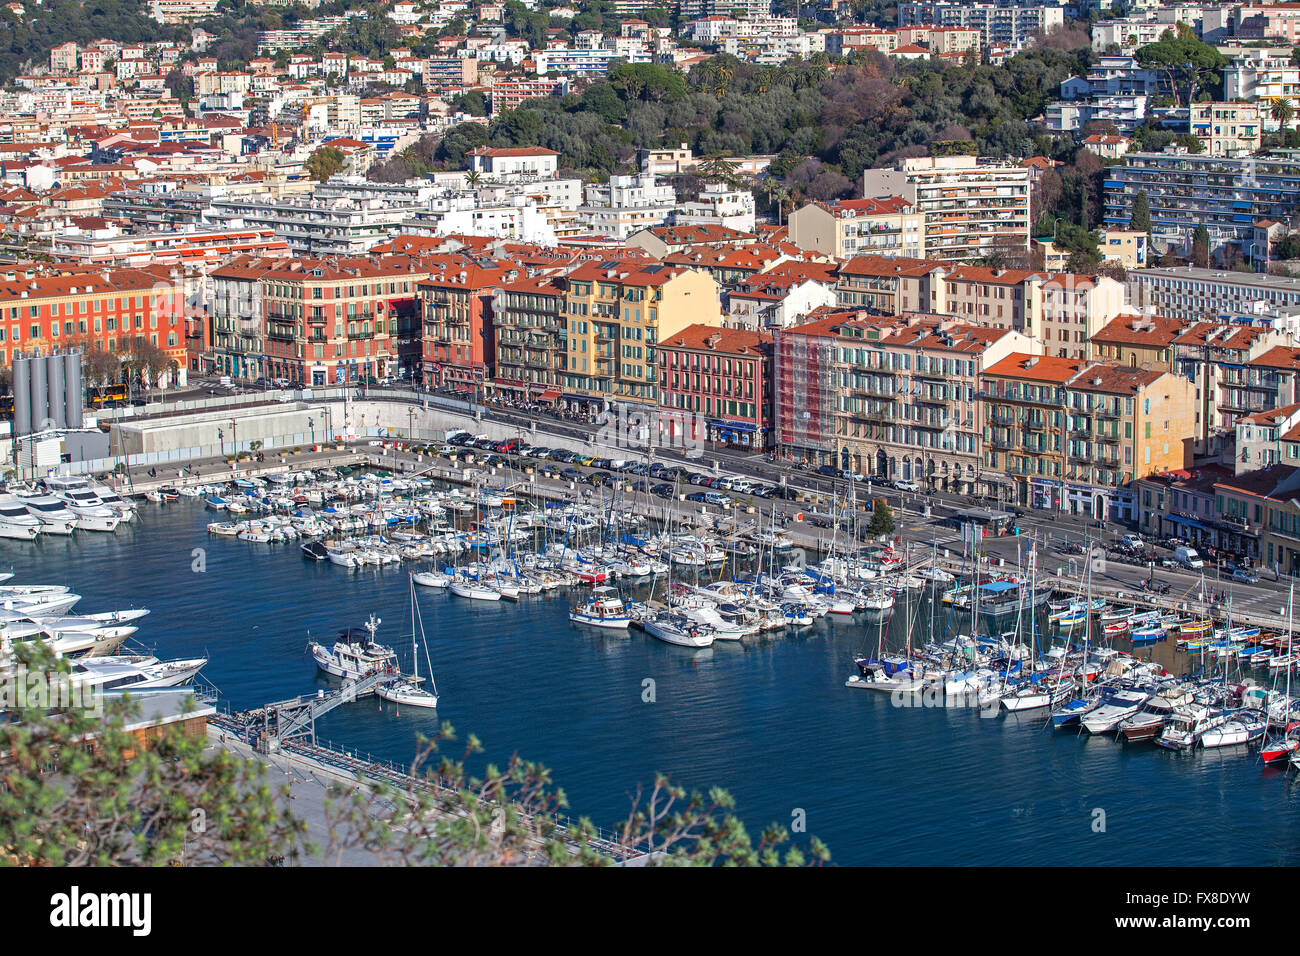 Hafen von Nizza von oben - Cote D Azure - Frankreich Stockfotografie - Alamy